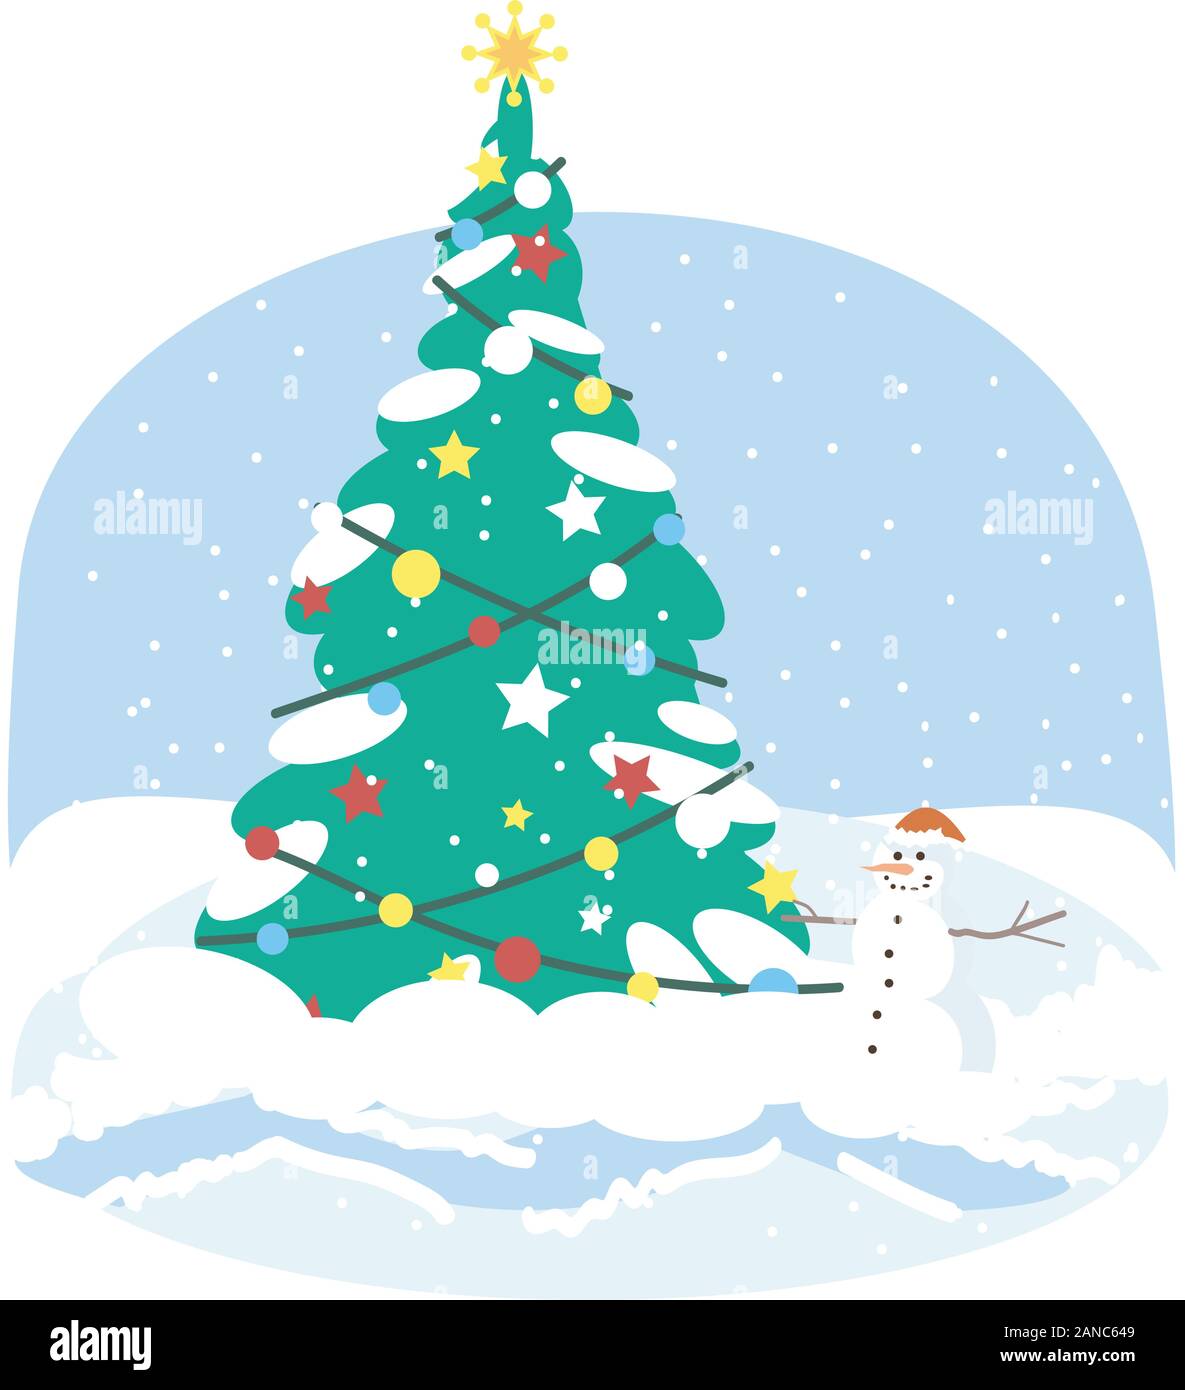 Árbol de Navidad flat ilustración vectorial. Abeto de navidad con muñeco de y las luces decorativas decoraciones clipart de dibujos animados. Año nuevo, decoración al aire libre en invierno. Chr Imagen